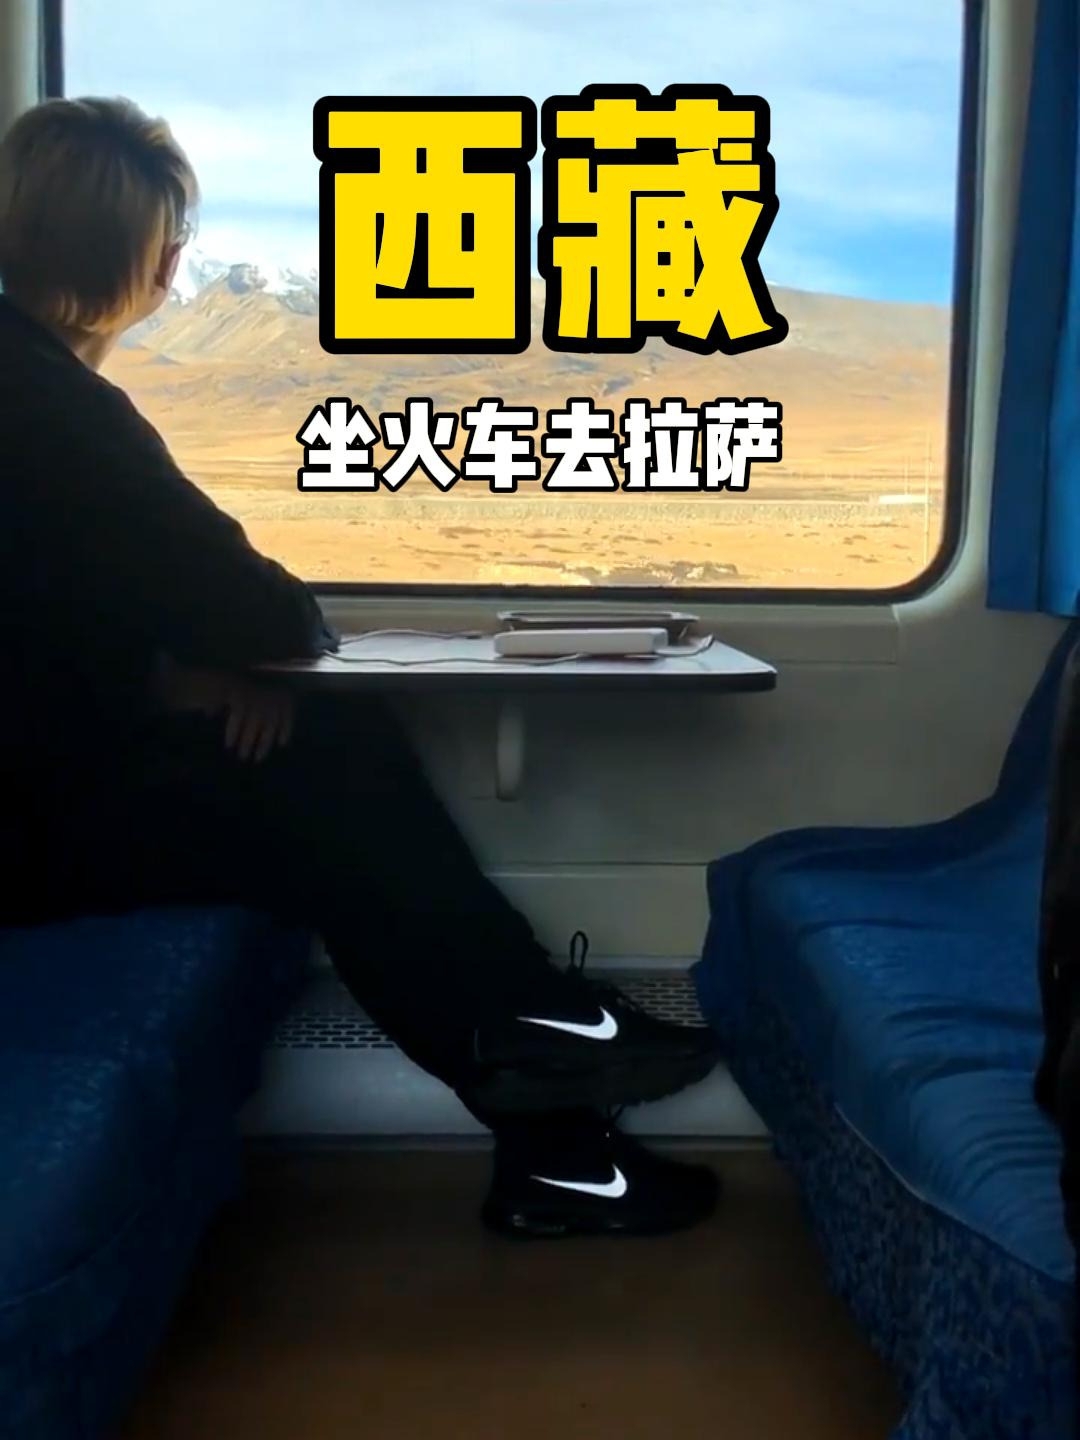 坐上火车去拉萨 #坐上火车去拉萨 #西藏#一起去西藏 #西藏旅游攻略 #火车旅行